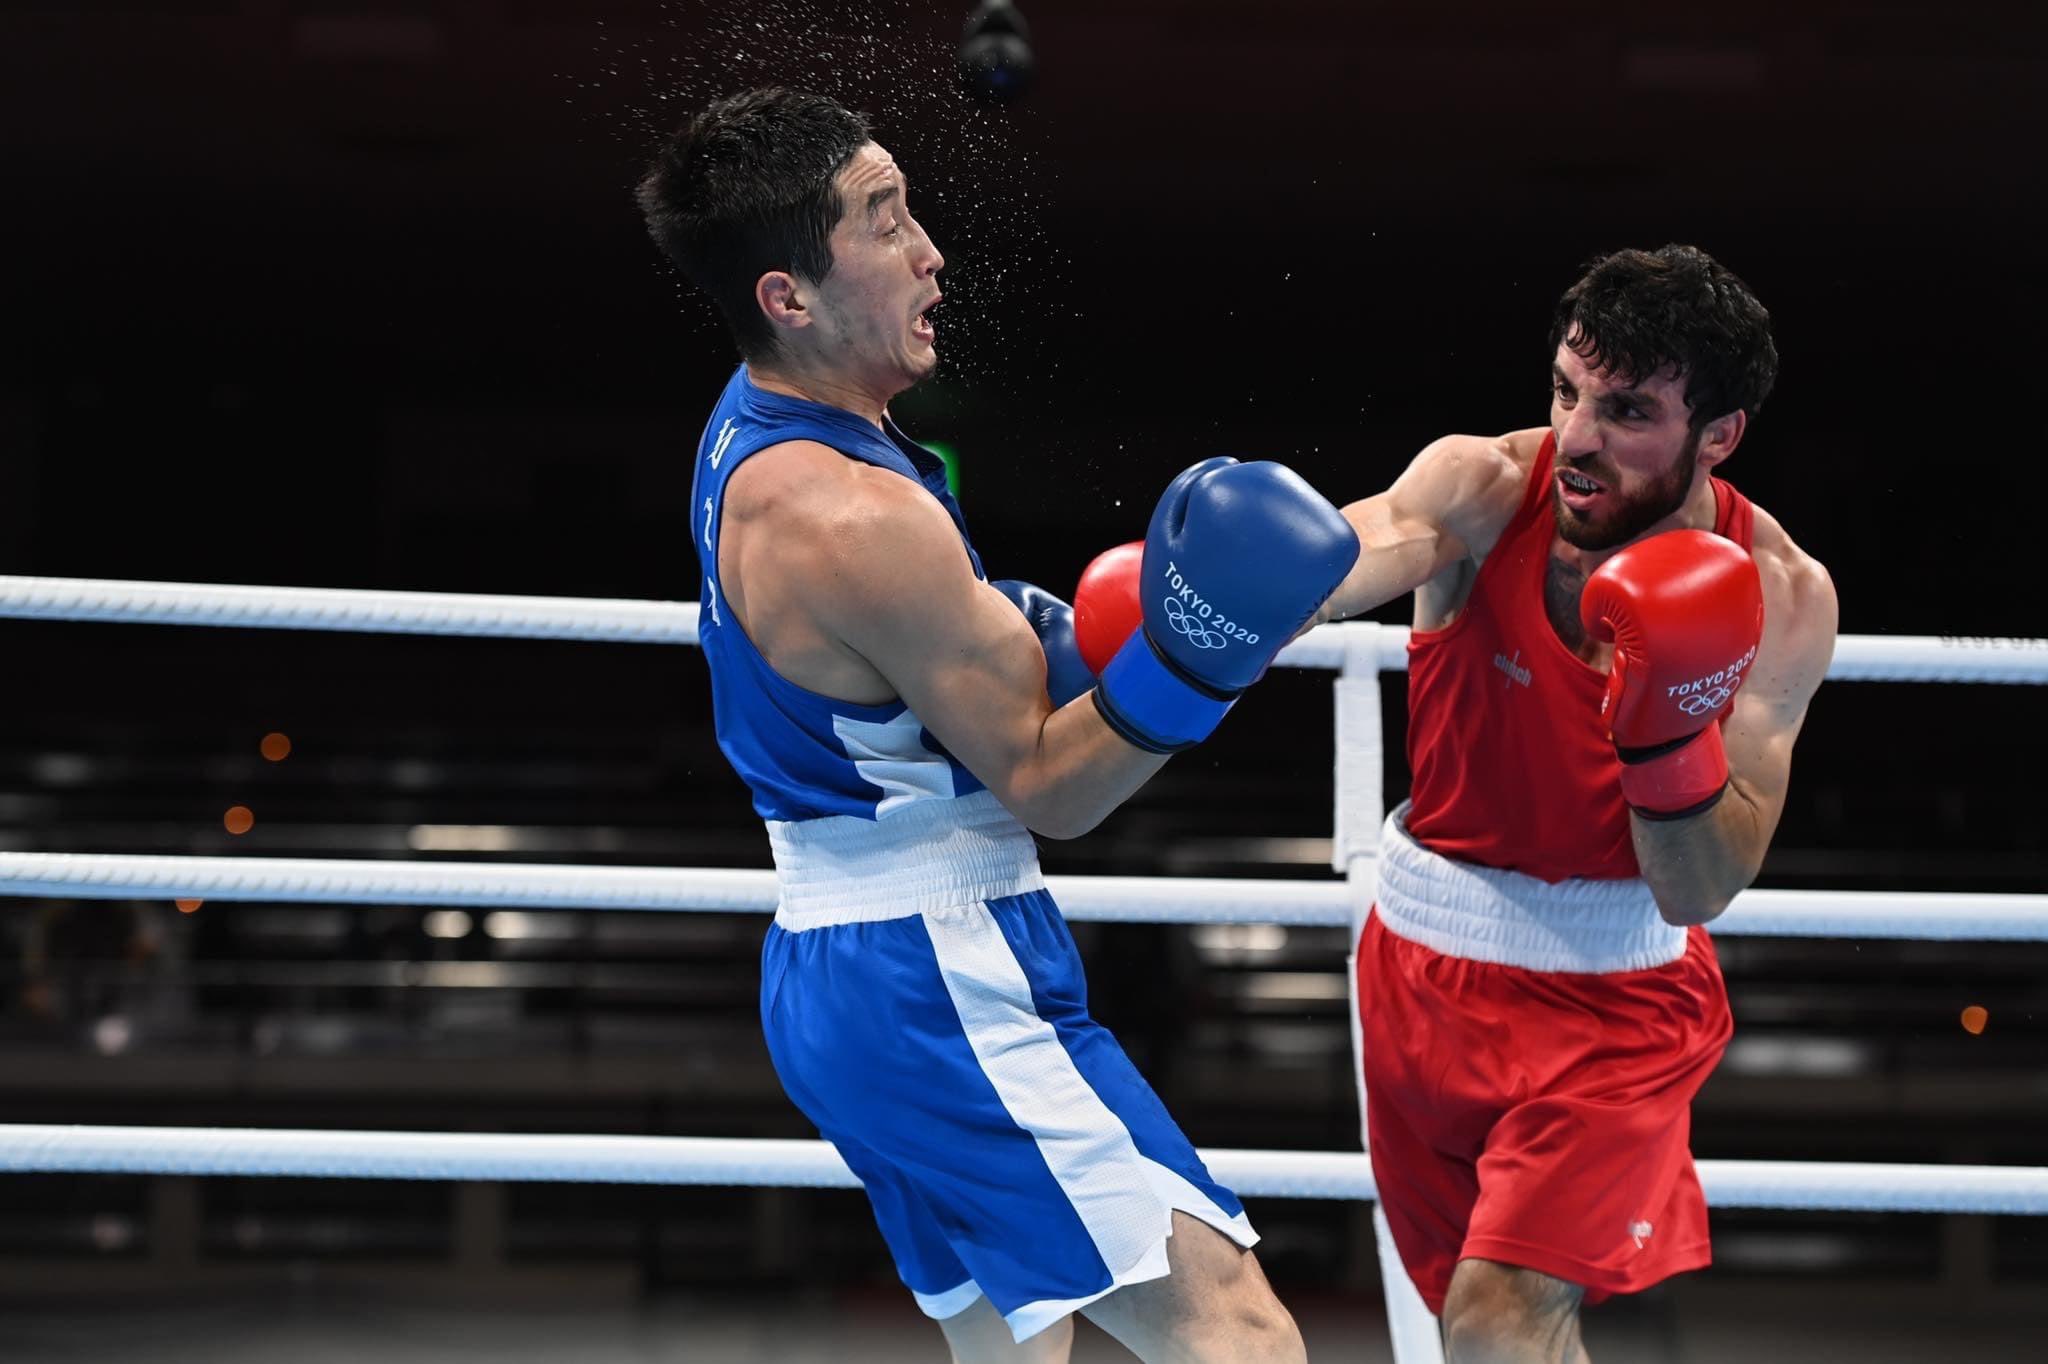 Оганес Бачков: «Для меня большая честь выиграть бронзовую медаль для Армении»